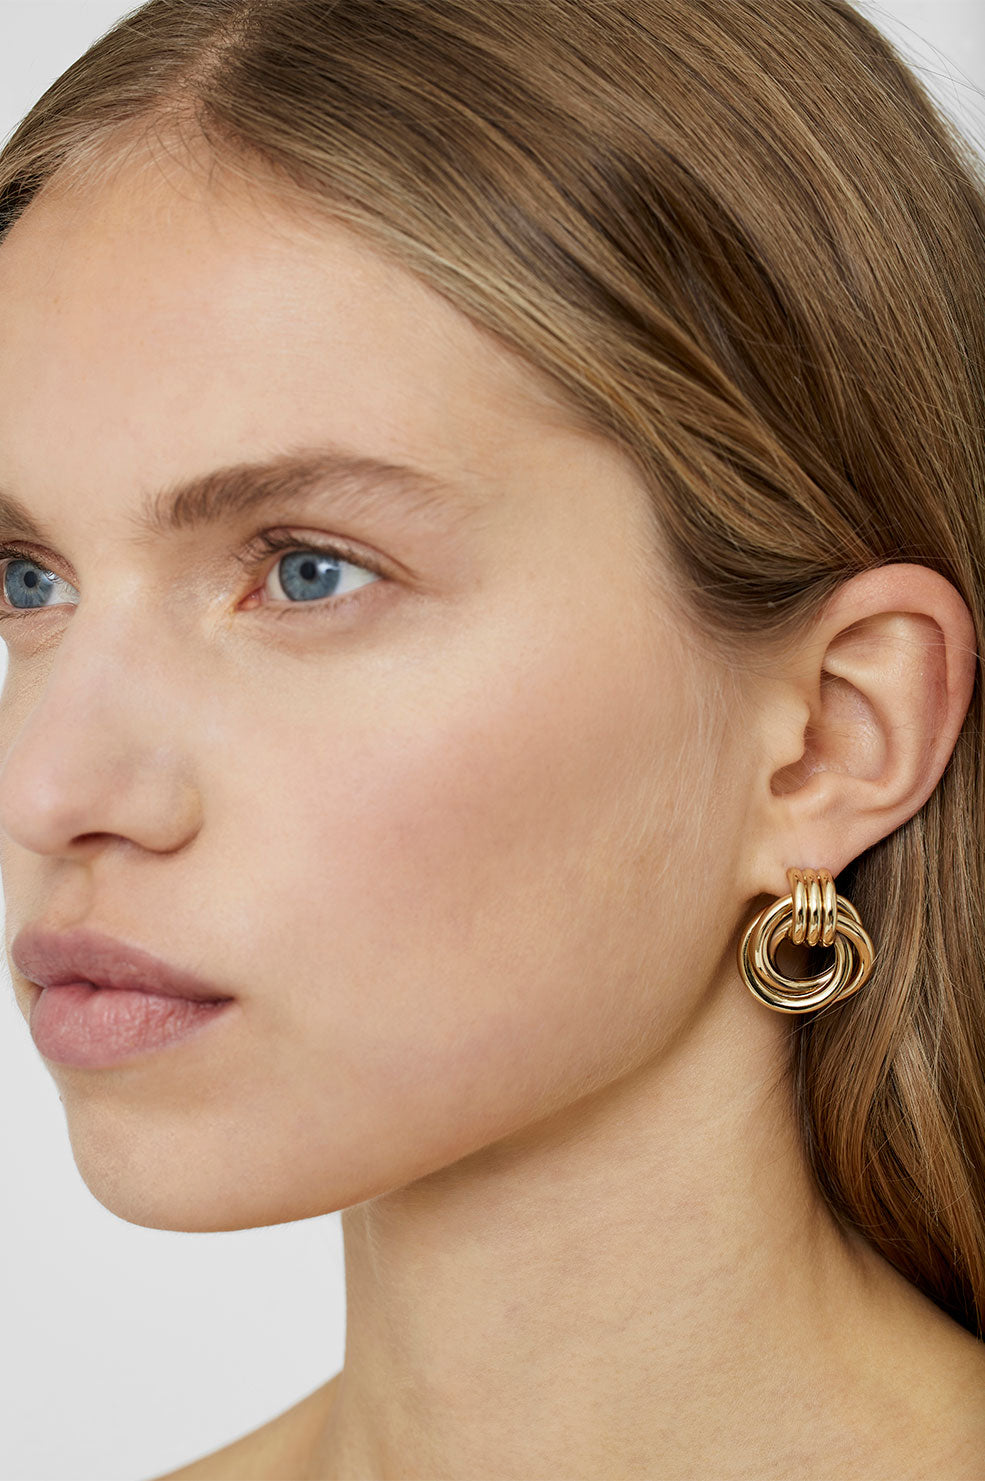 Anine Bing | Triple Knot Earrings - Gold